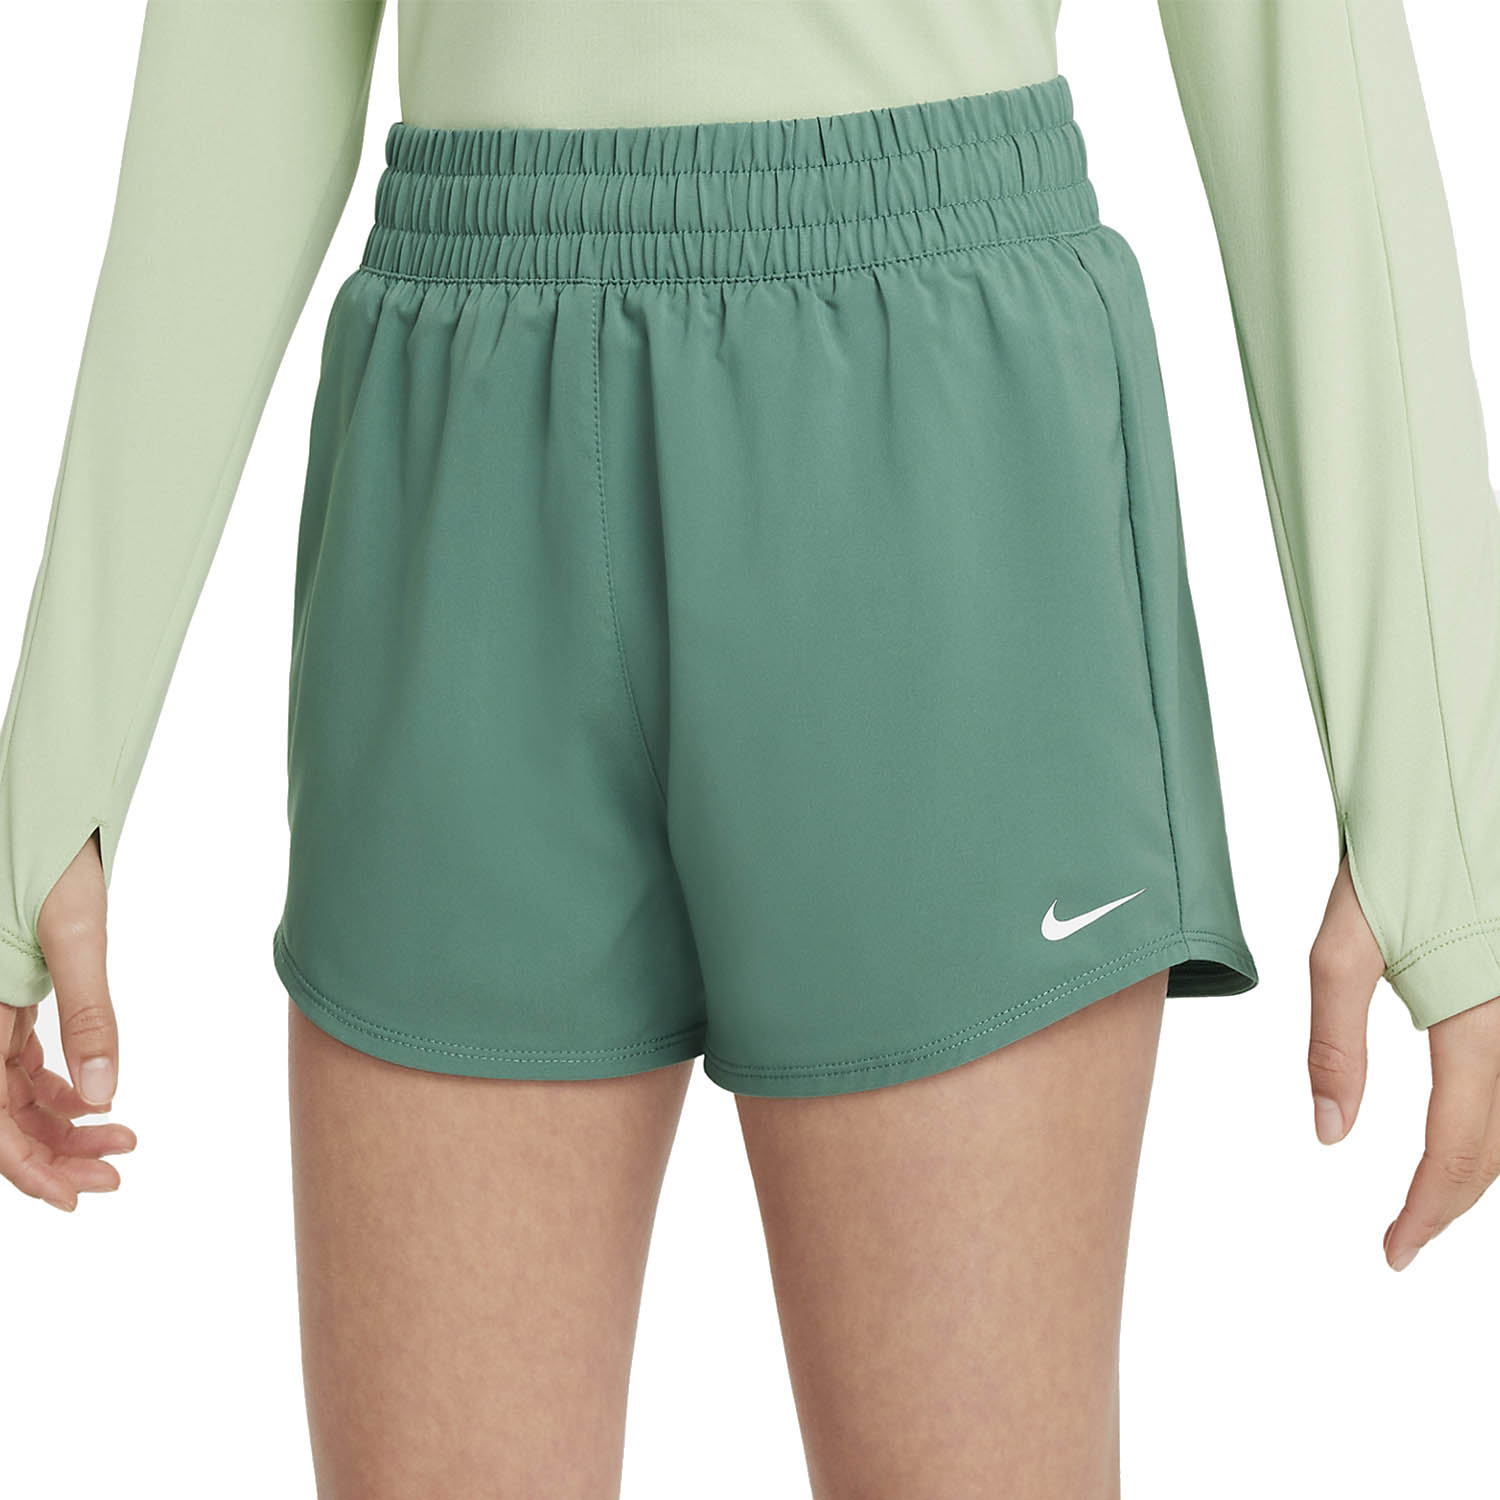 Nike Dri-FIT One 3in Shorts Girl - Bicoastal/White